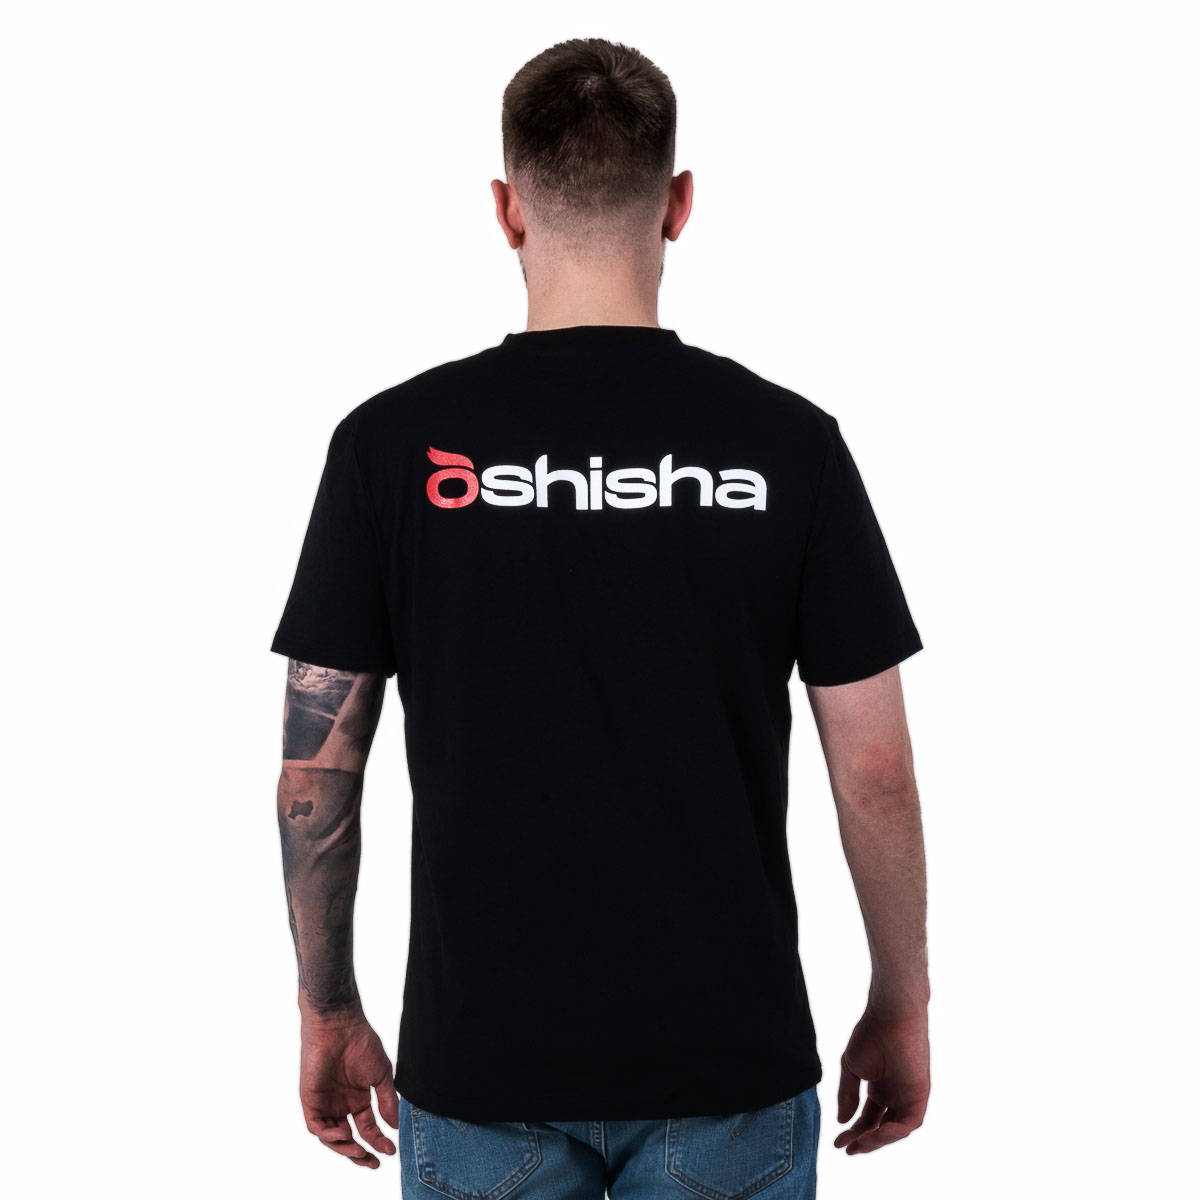 Фирменная футболка Oshisha S (чёрная)